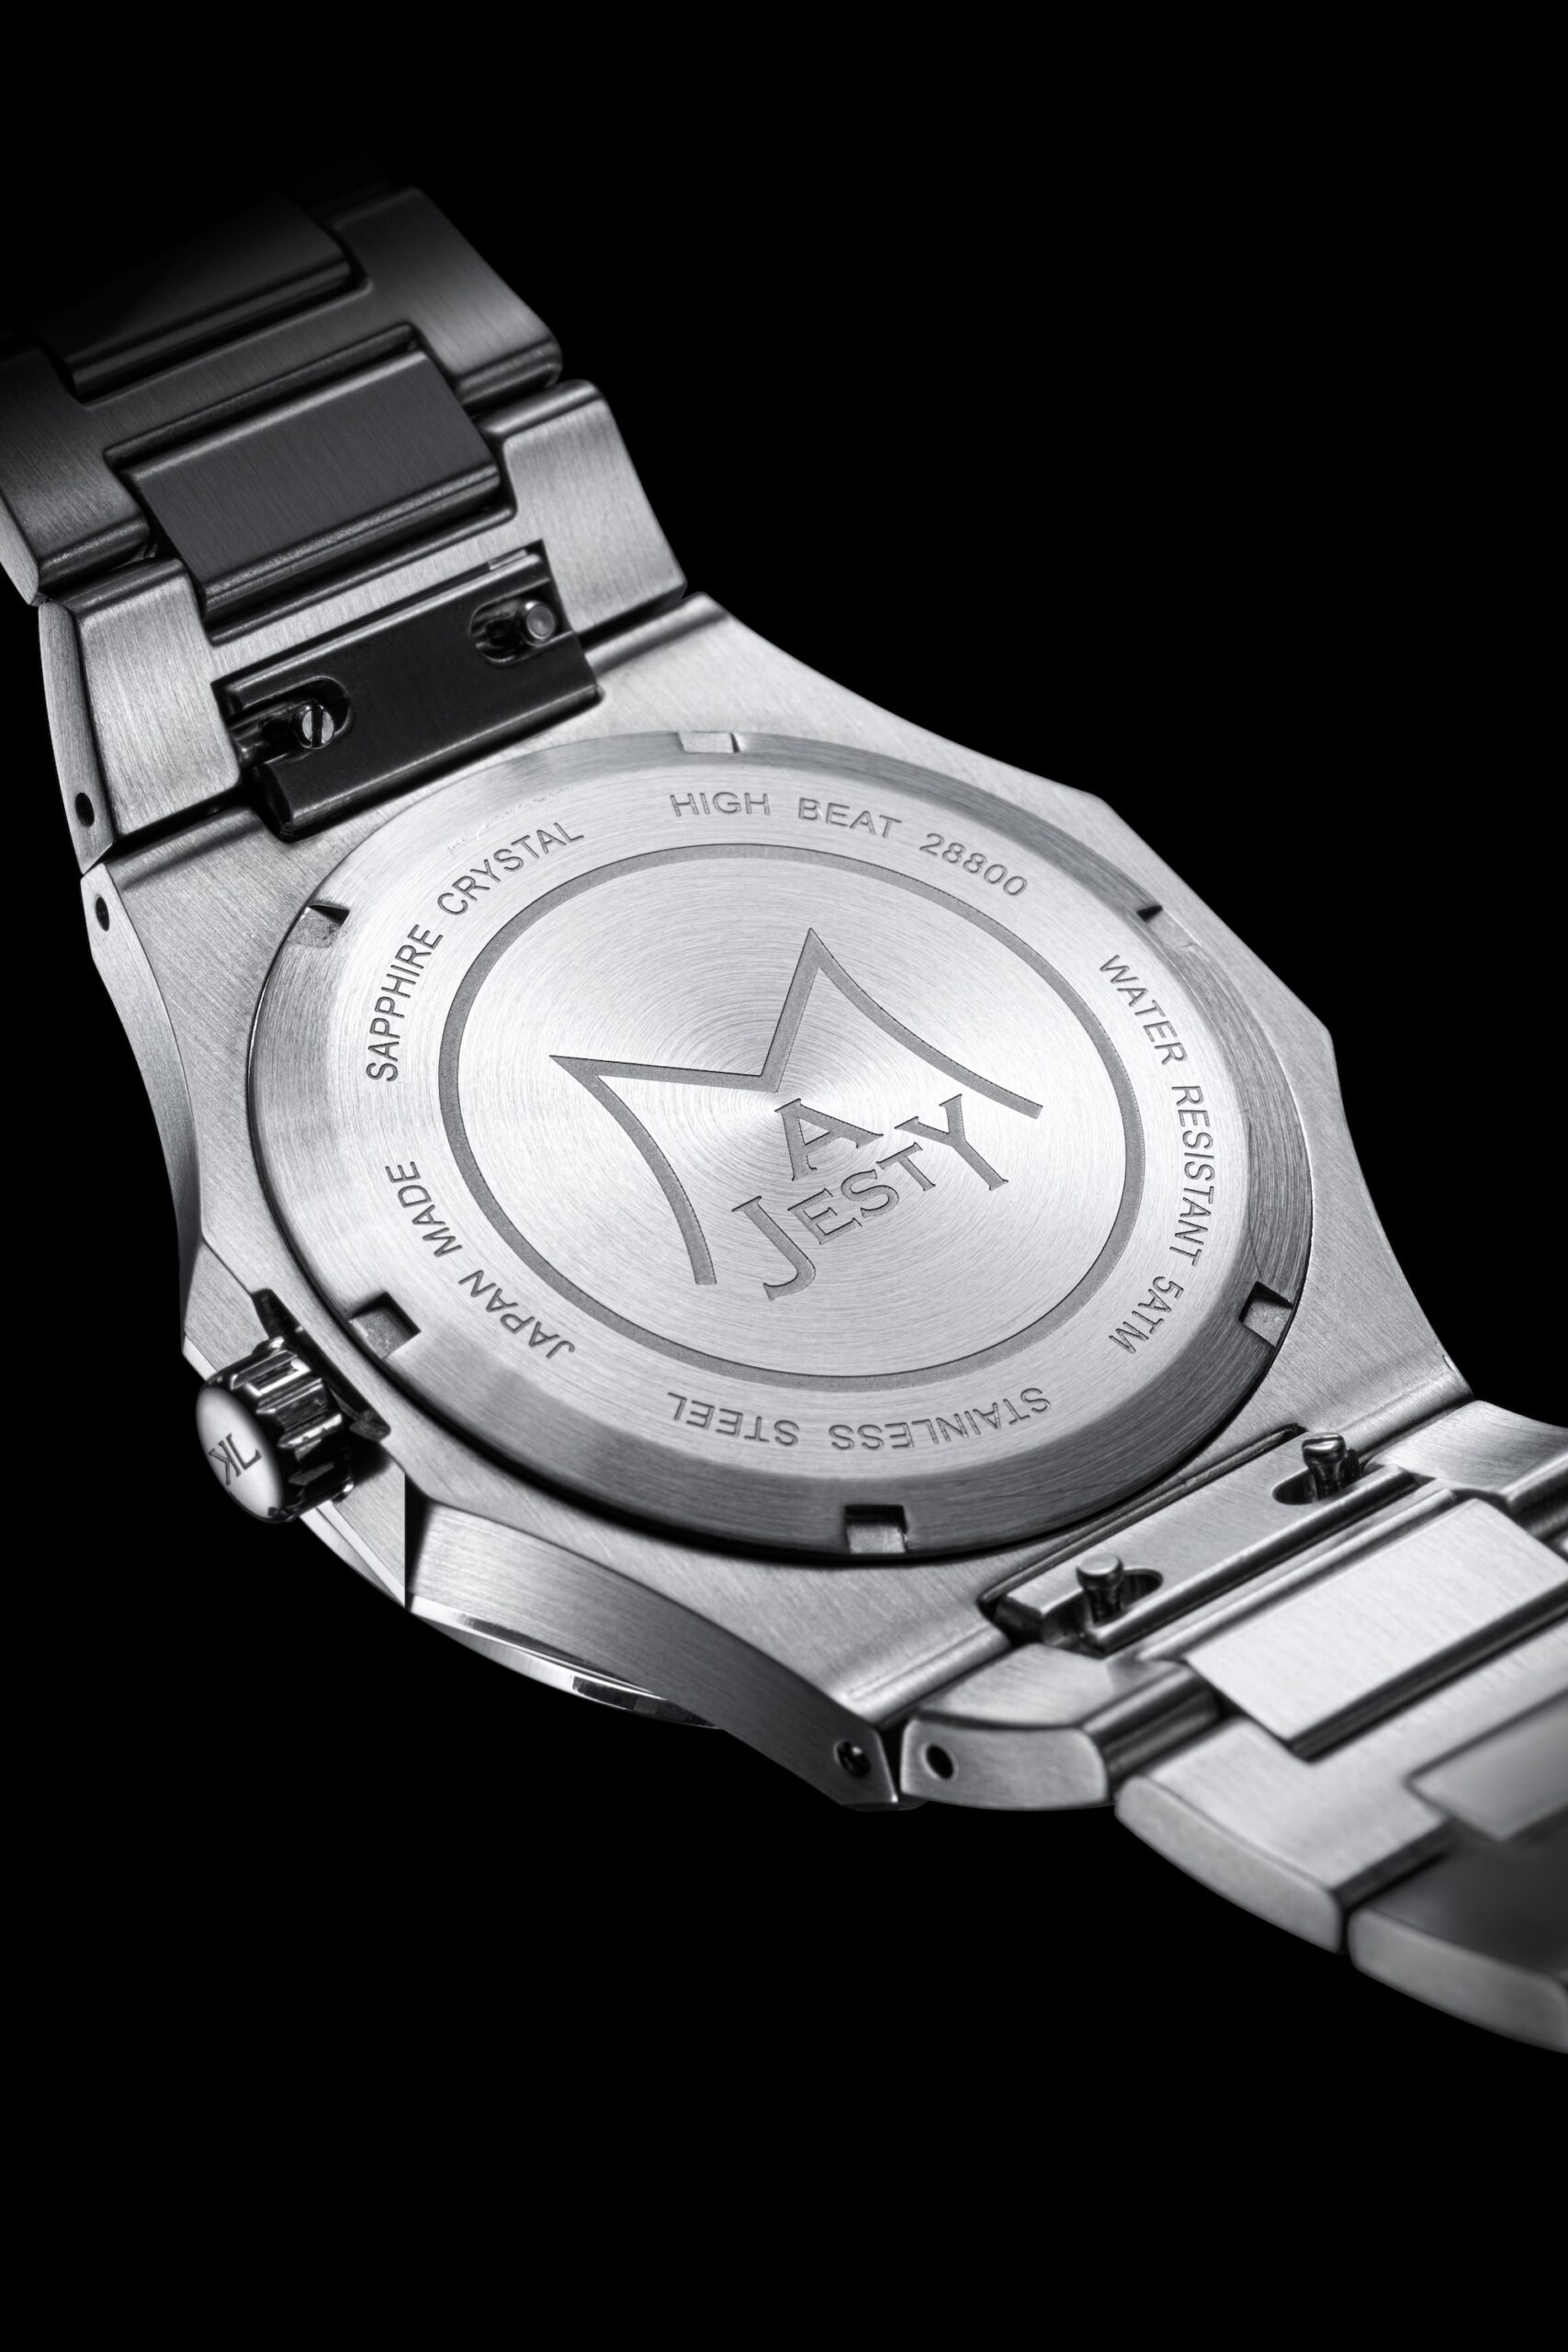 Японская часовая компания Karl-Leimon выпустила коллекцию спортивных часов до 700 долларов